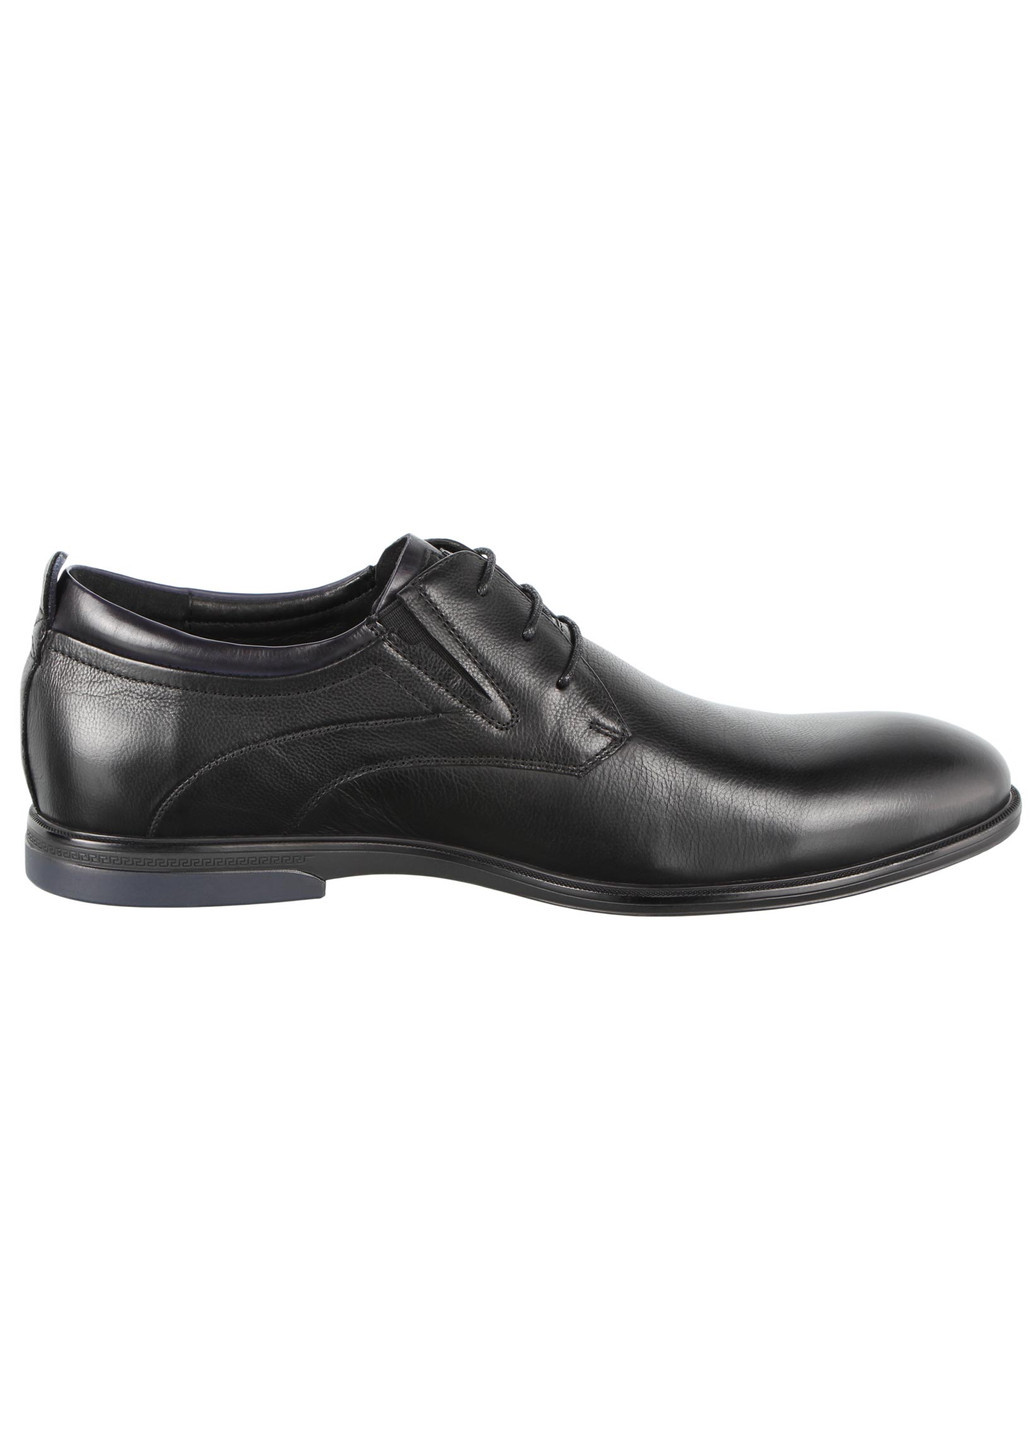 Черные мужские классические туфли 197437 Cosottinni на шнурках